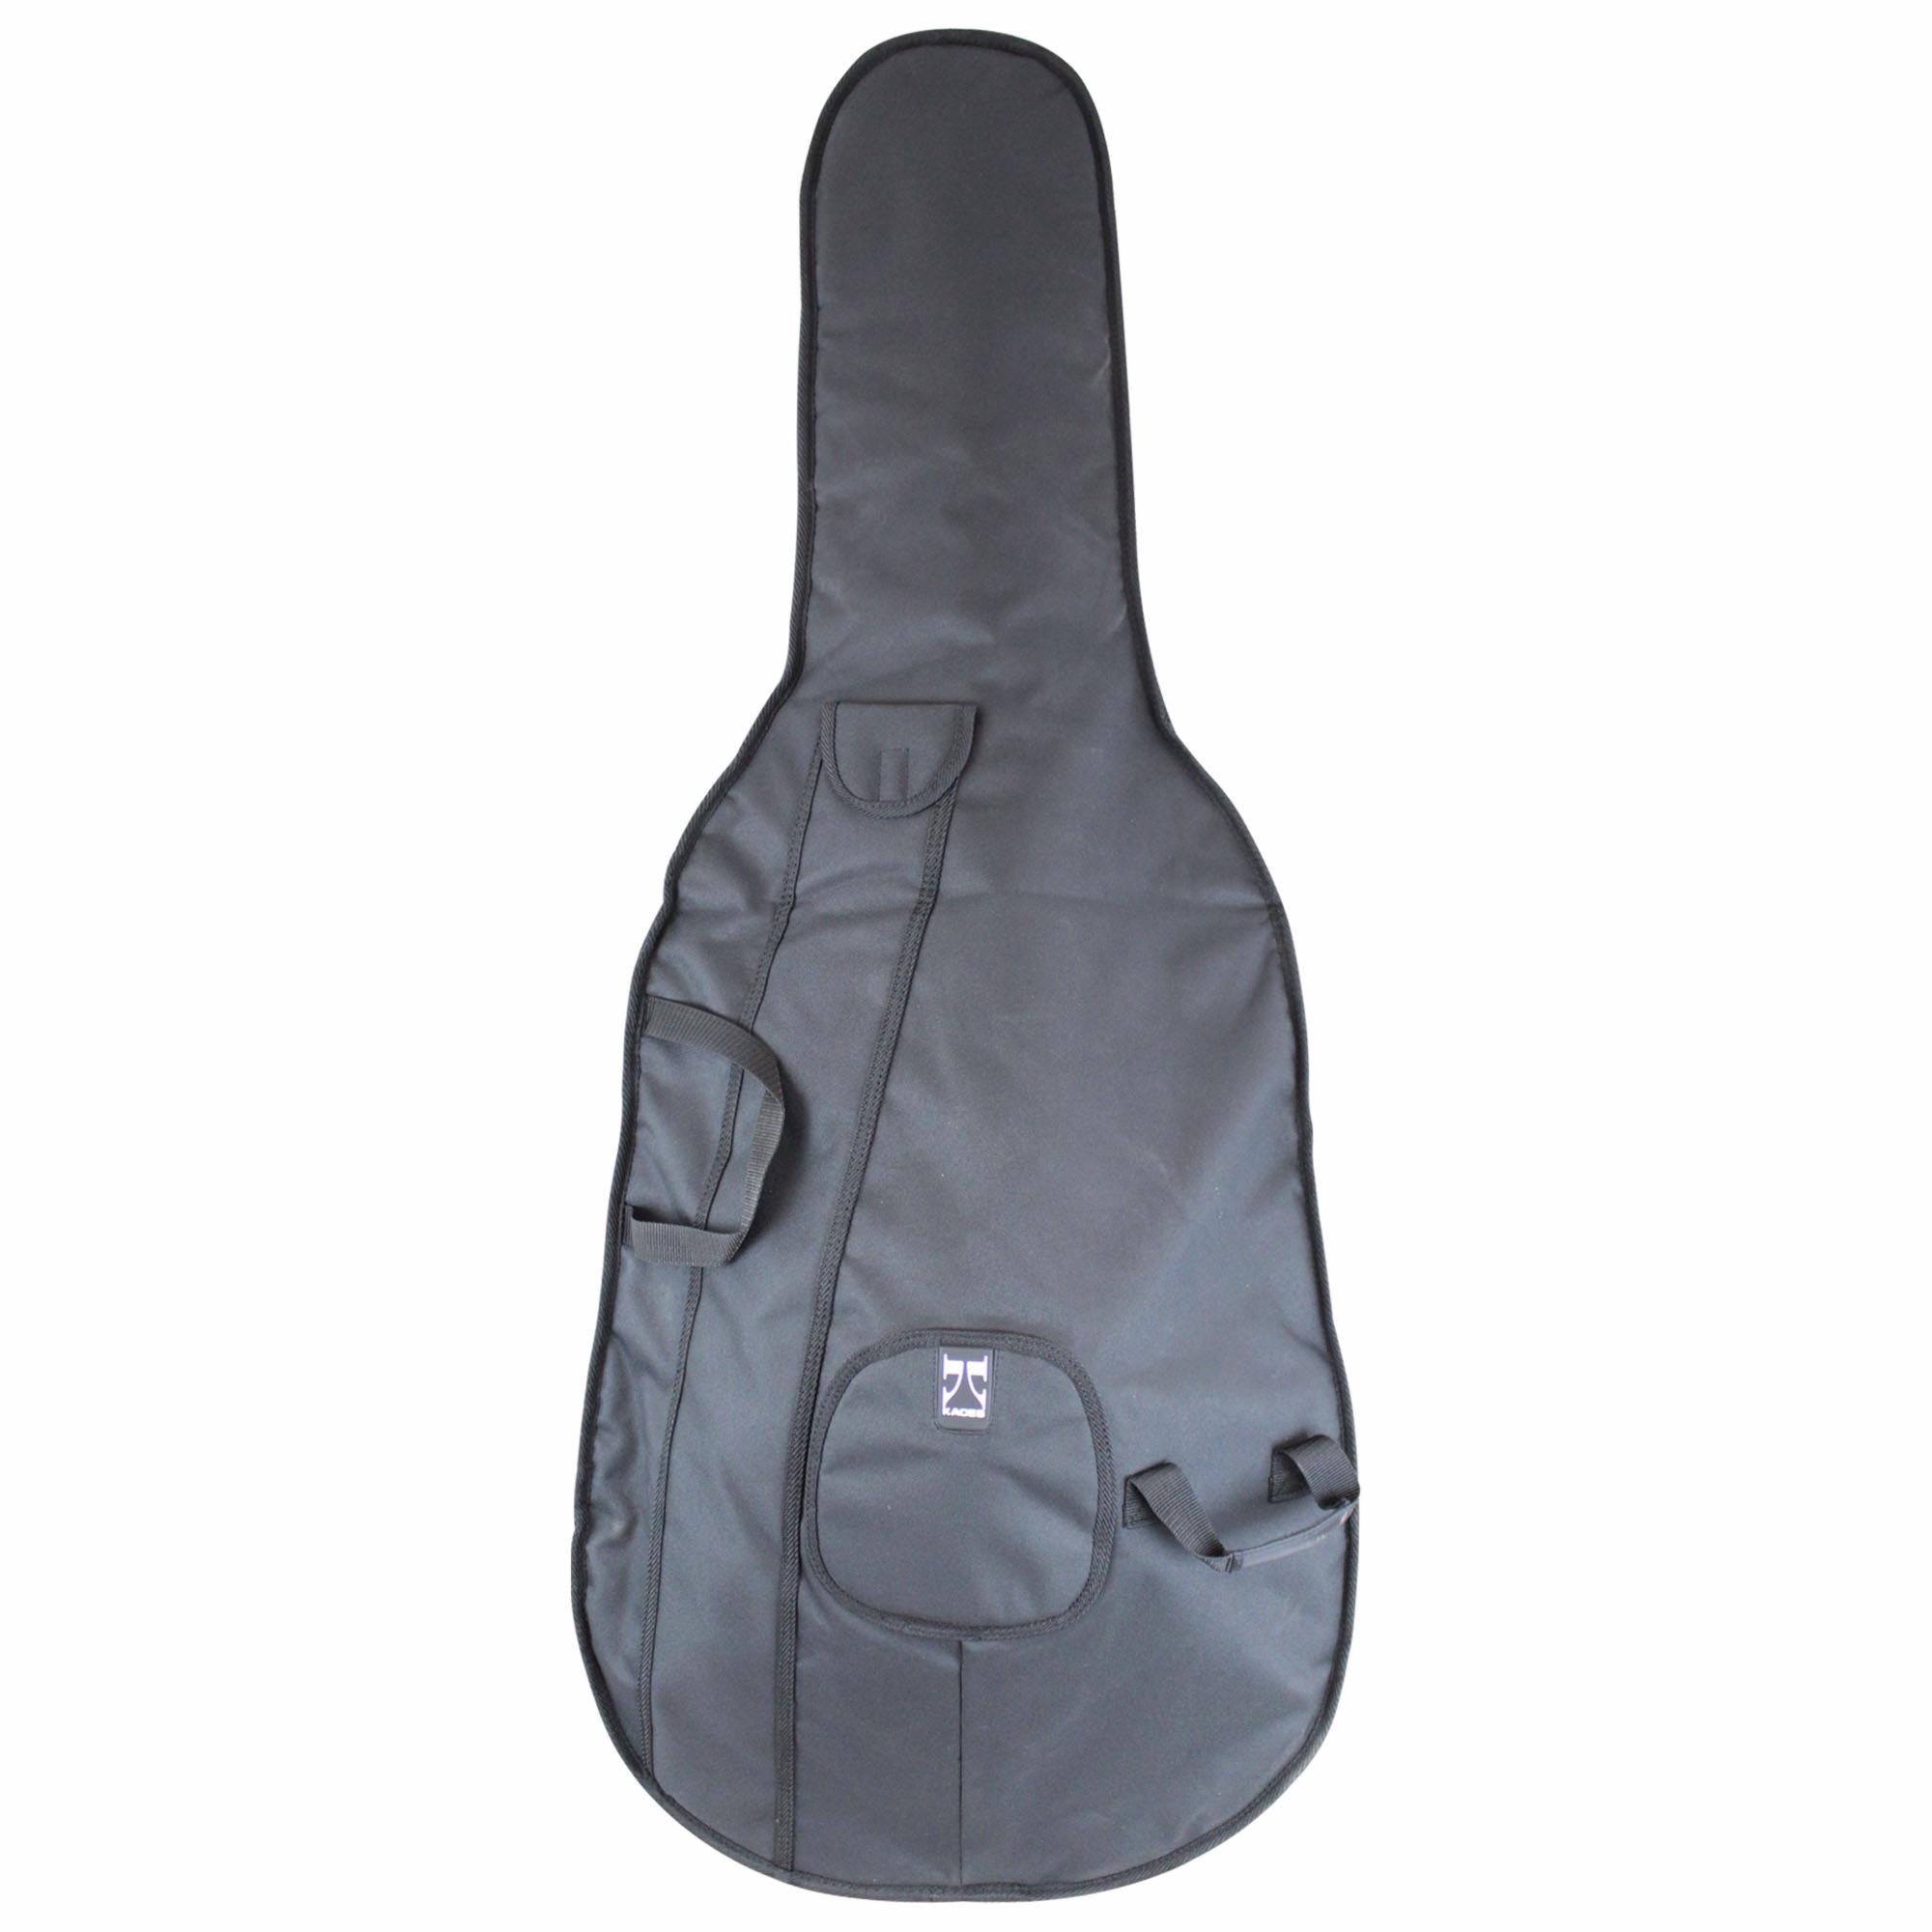 Kaces University Deluxe Cello Bag 12mm 